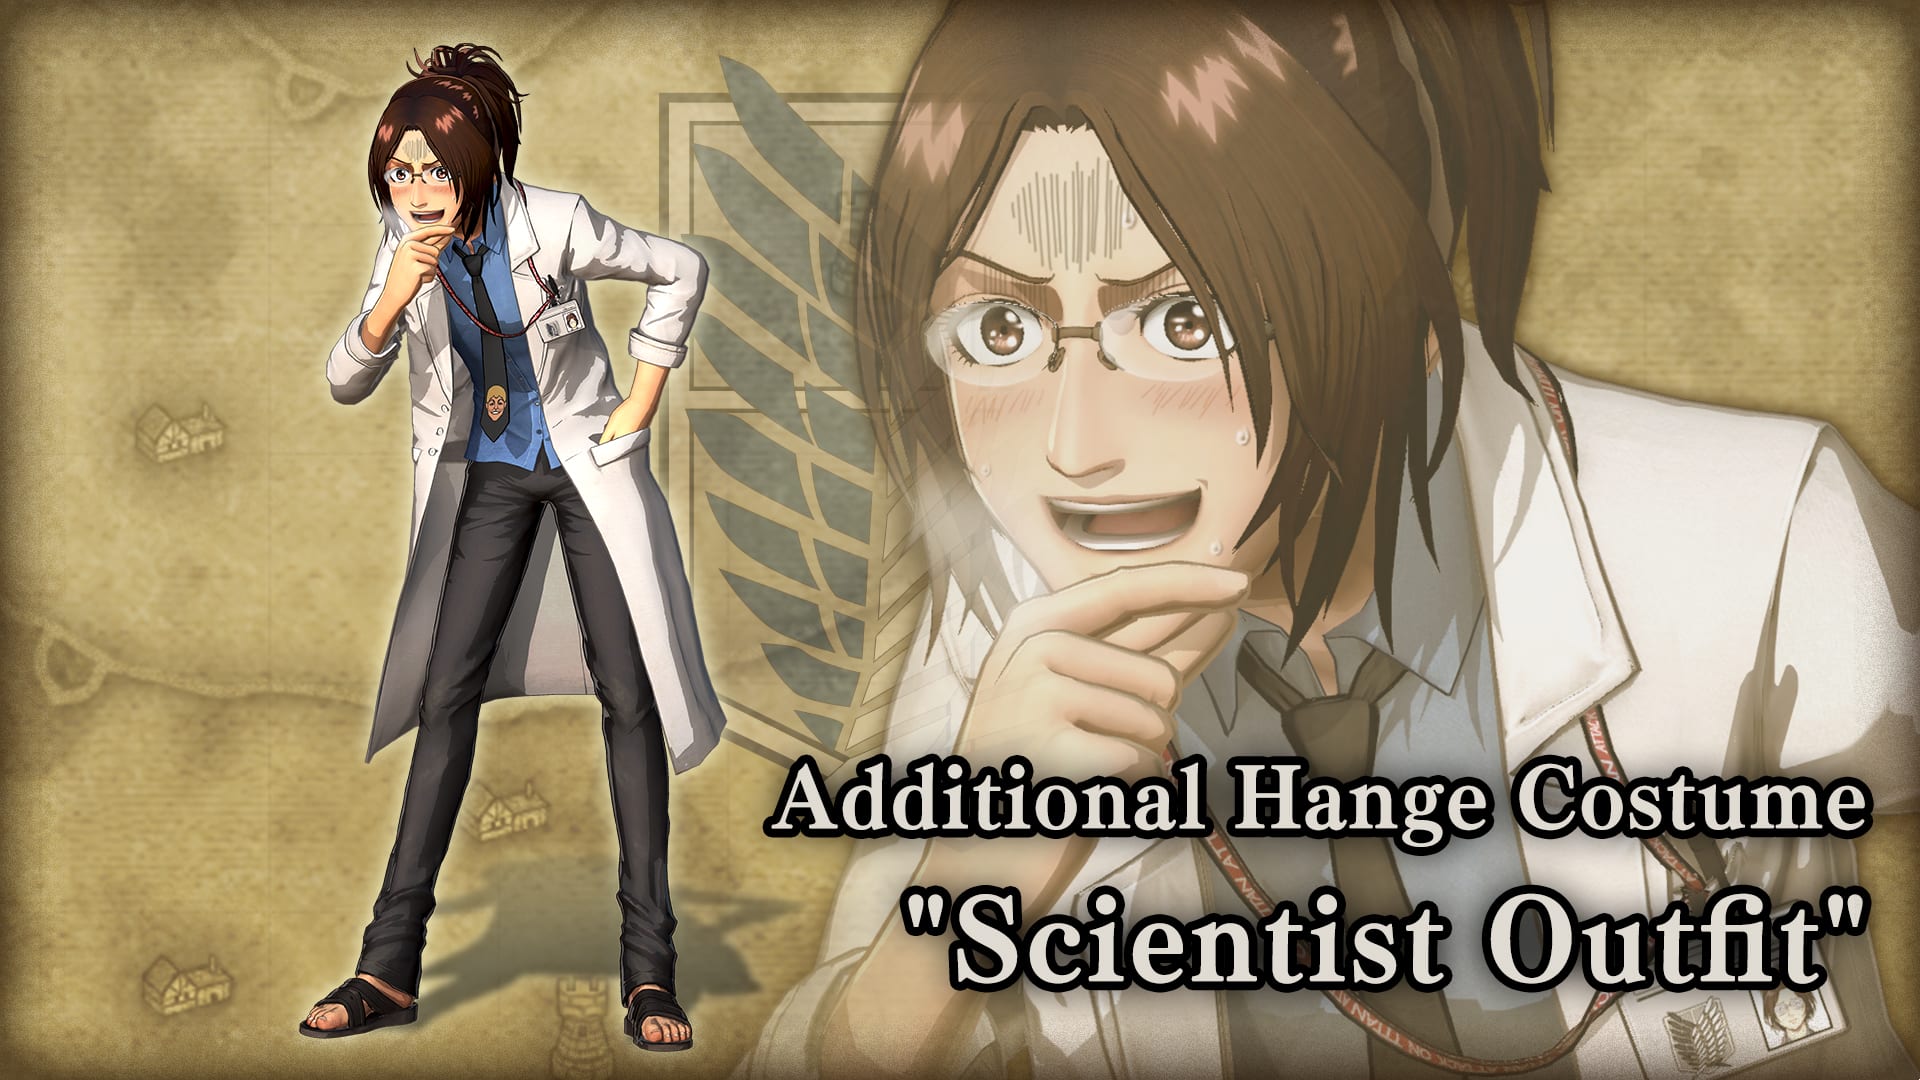 Roupa adicional para Hange, Scientist